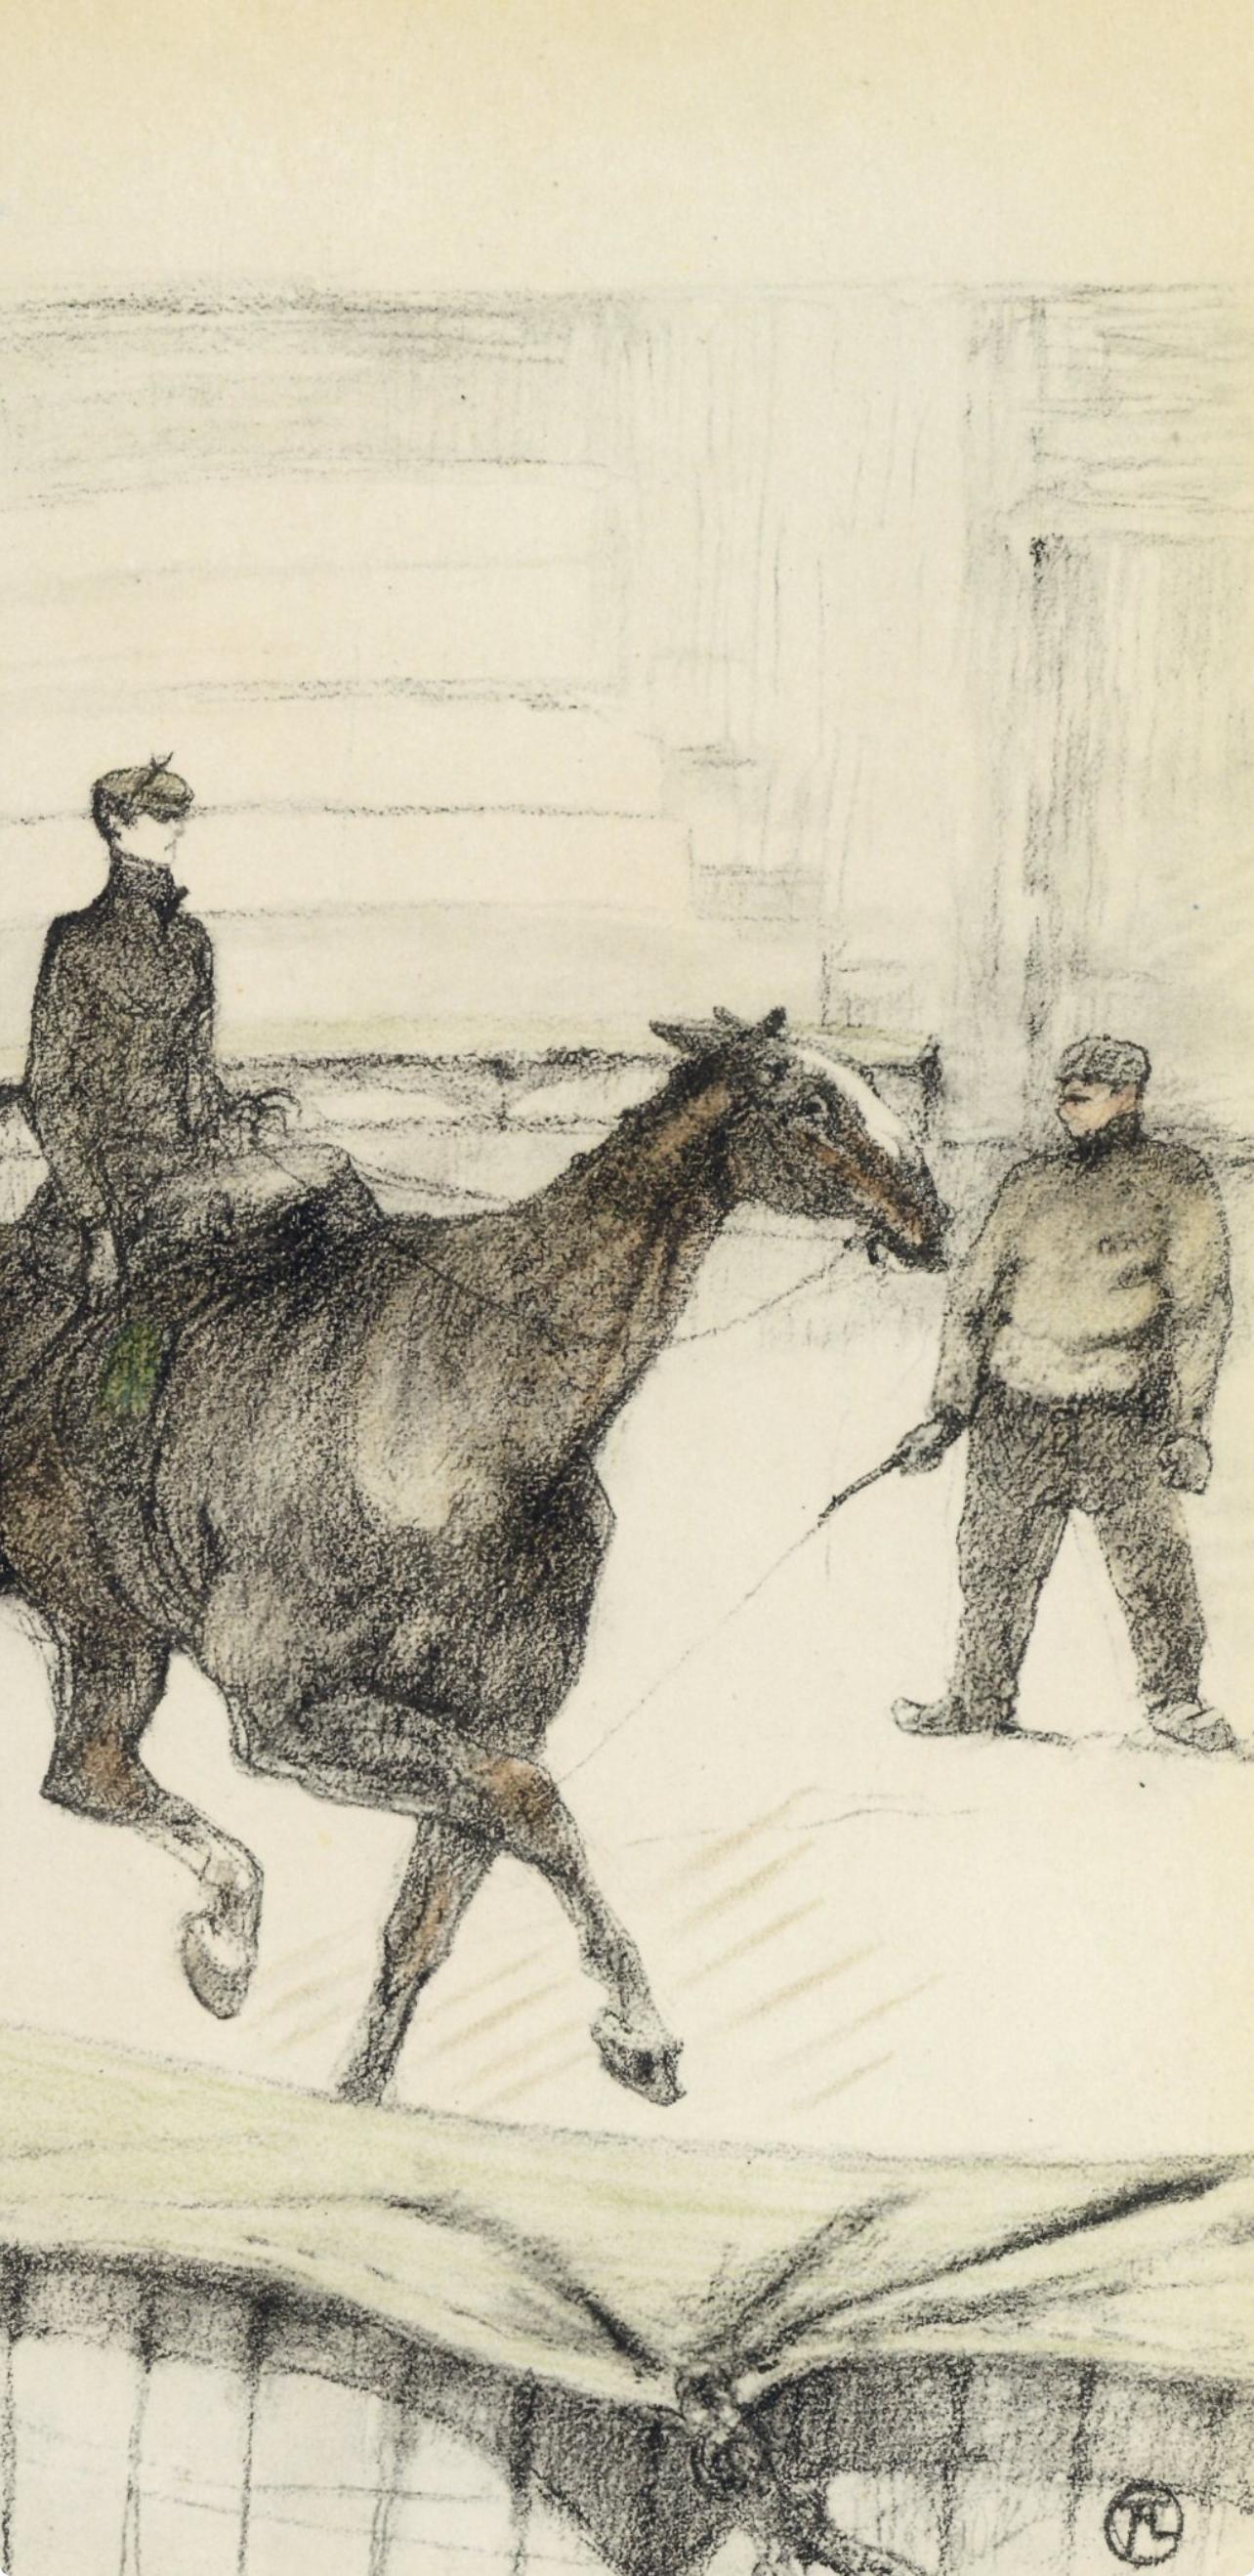 Toulouse-Lautrec, Travail de répétition, Le cirque de Toulouse-Lautrec (après) - Print de Henri de Toulouse-Lautrec